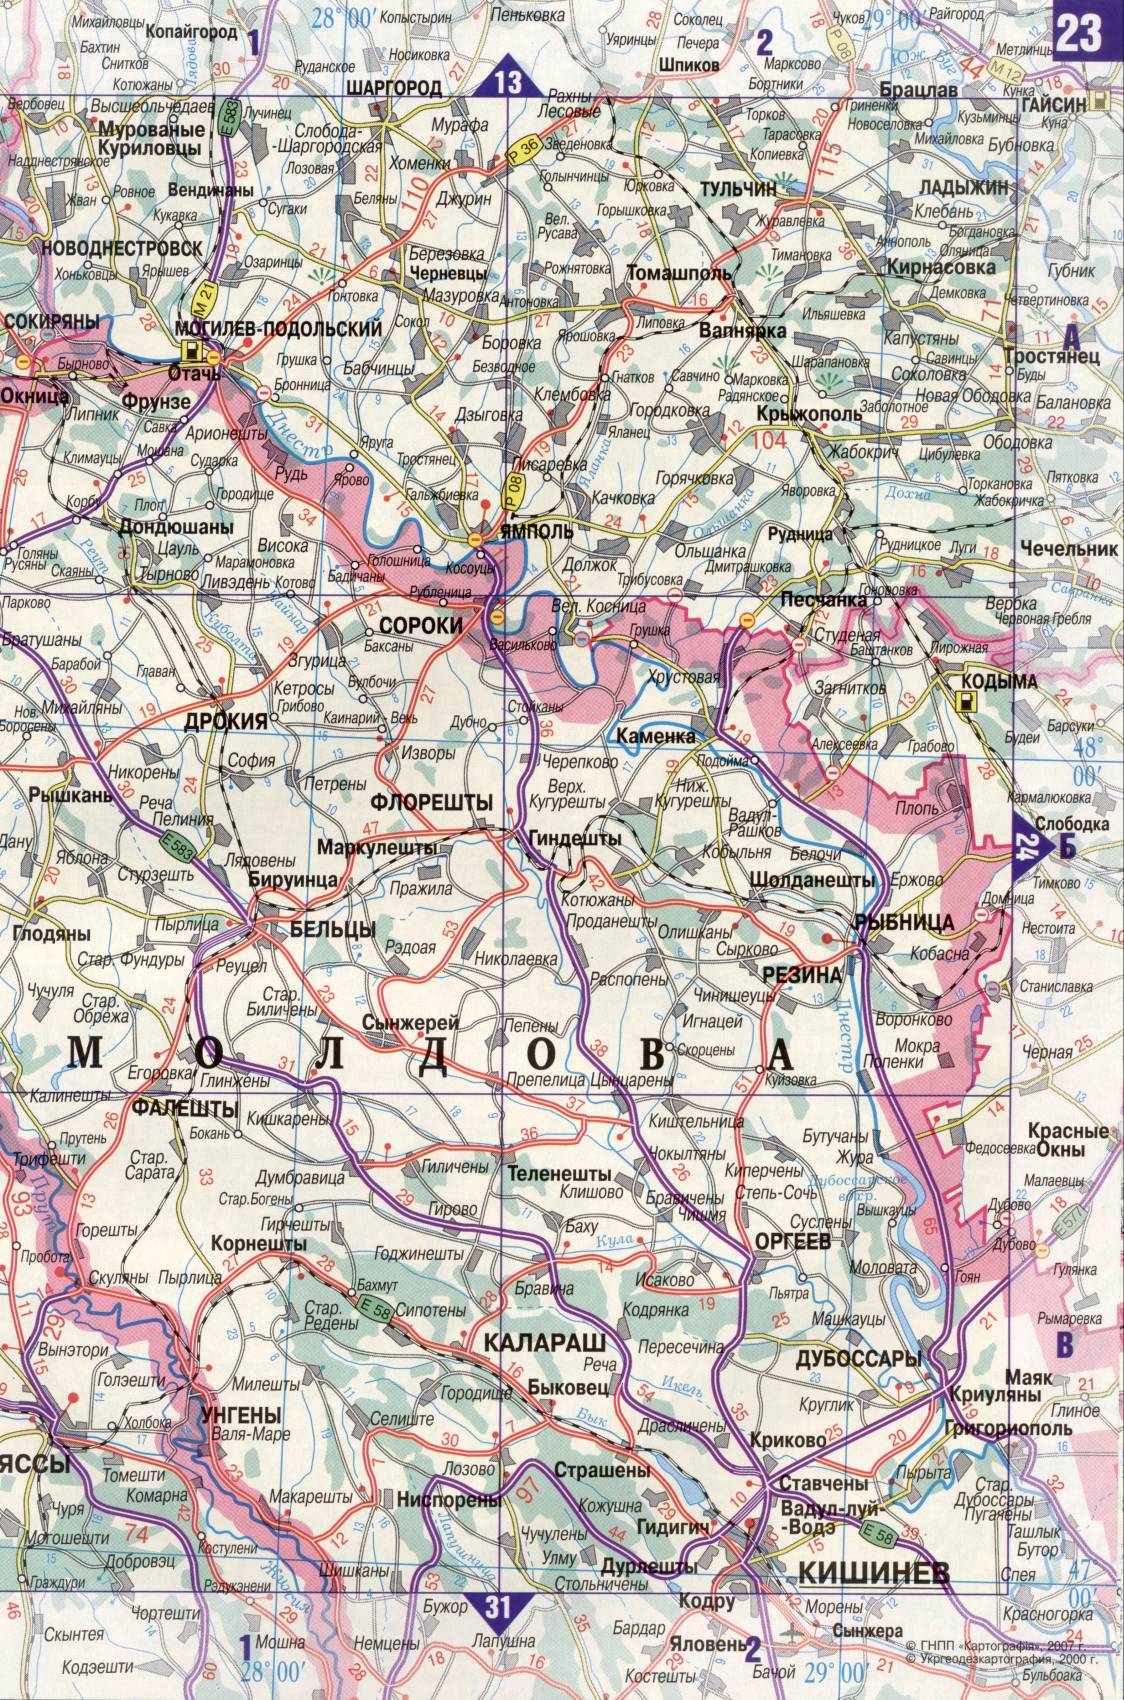 Карта Украины. Подробная карта дорог Украина из автомобильног атласа. скачать бесплатно, D2